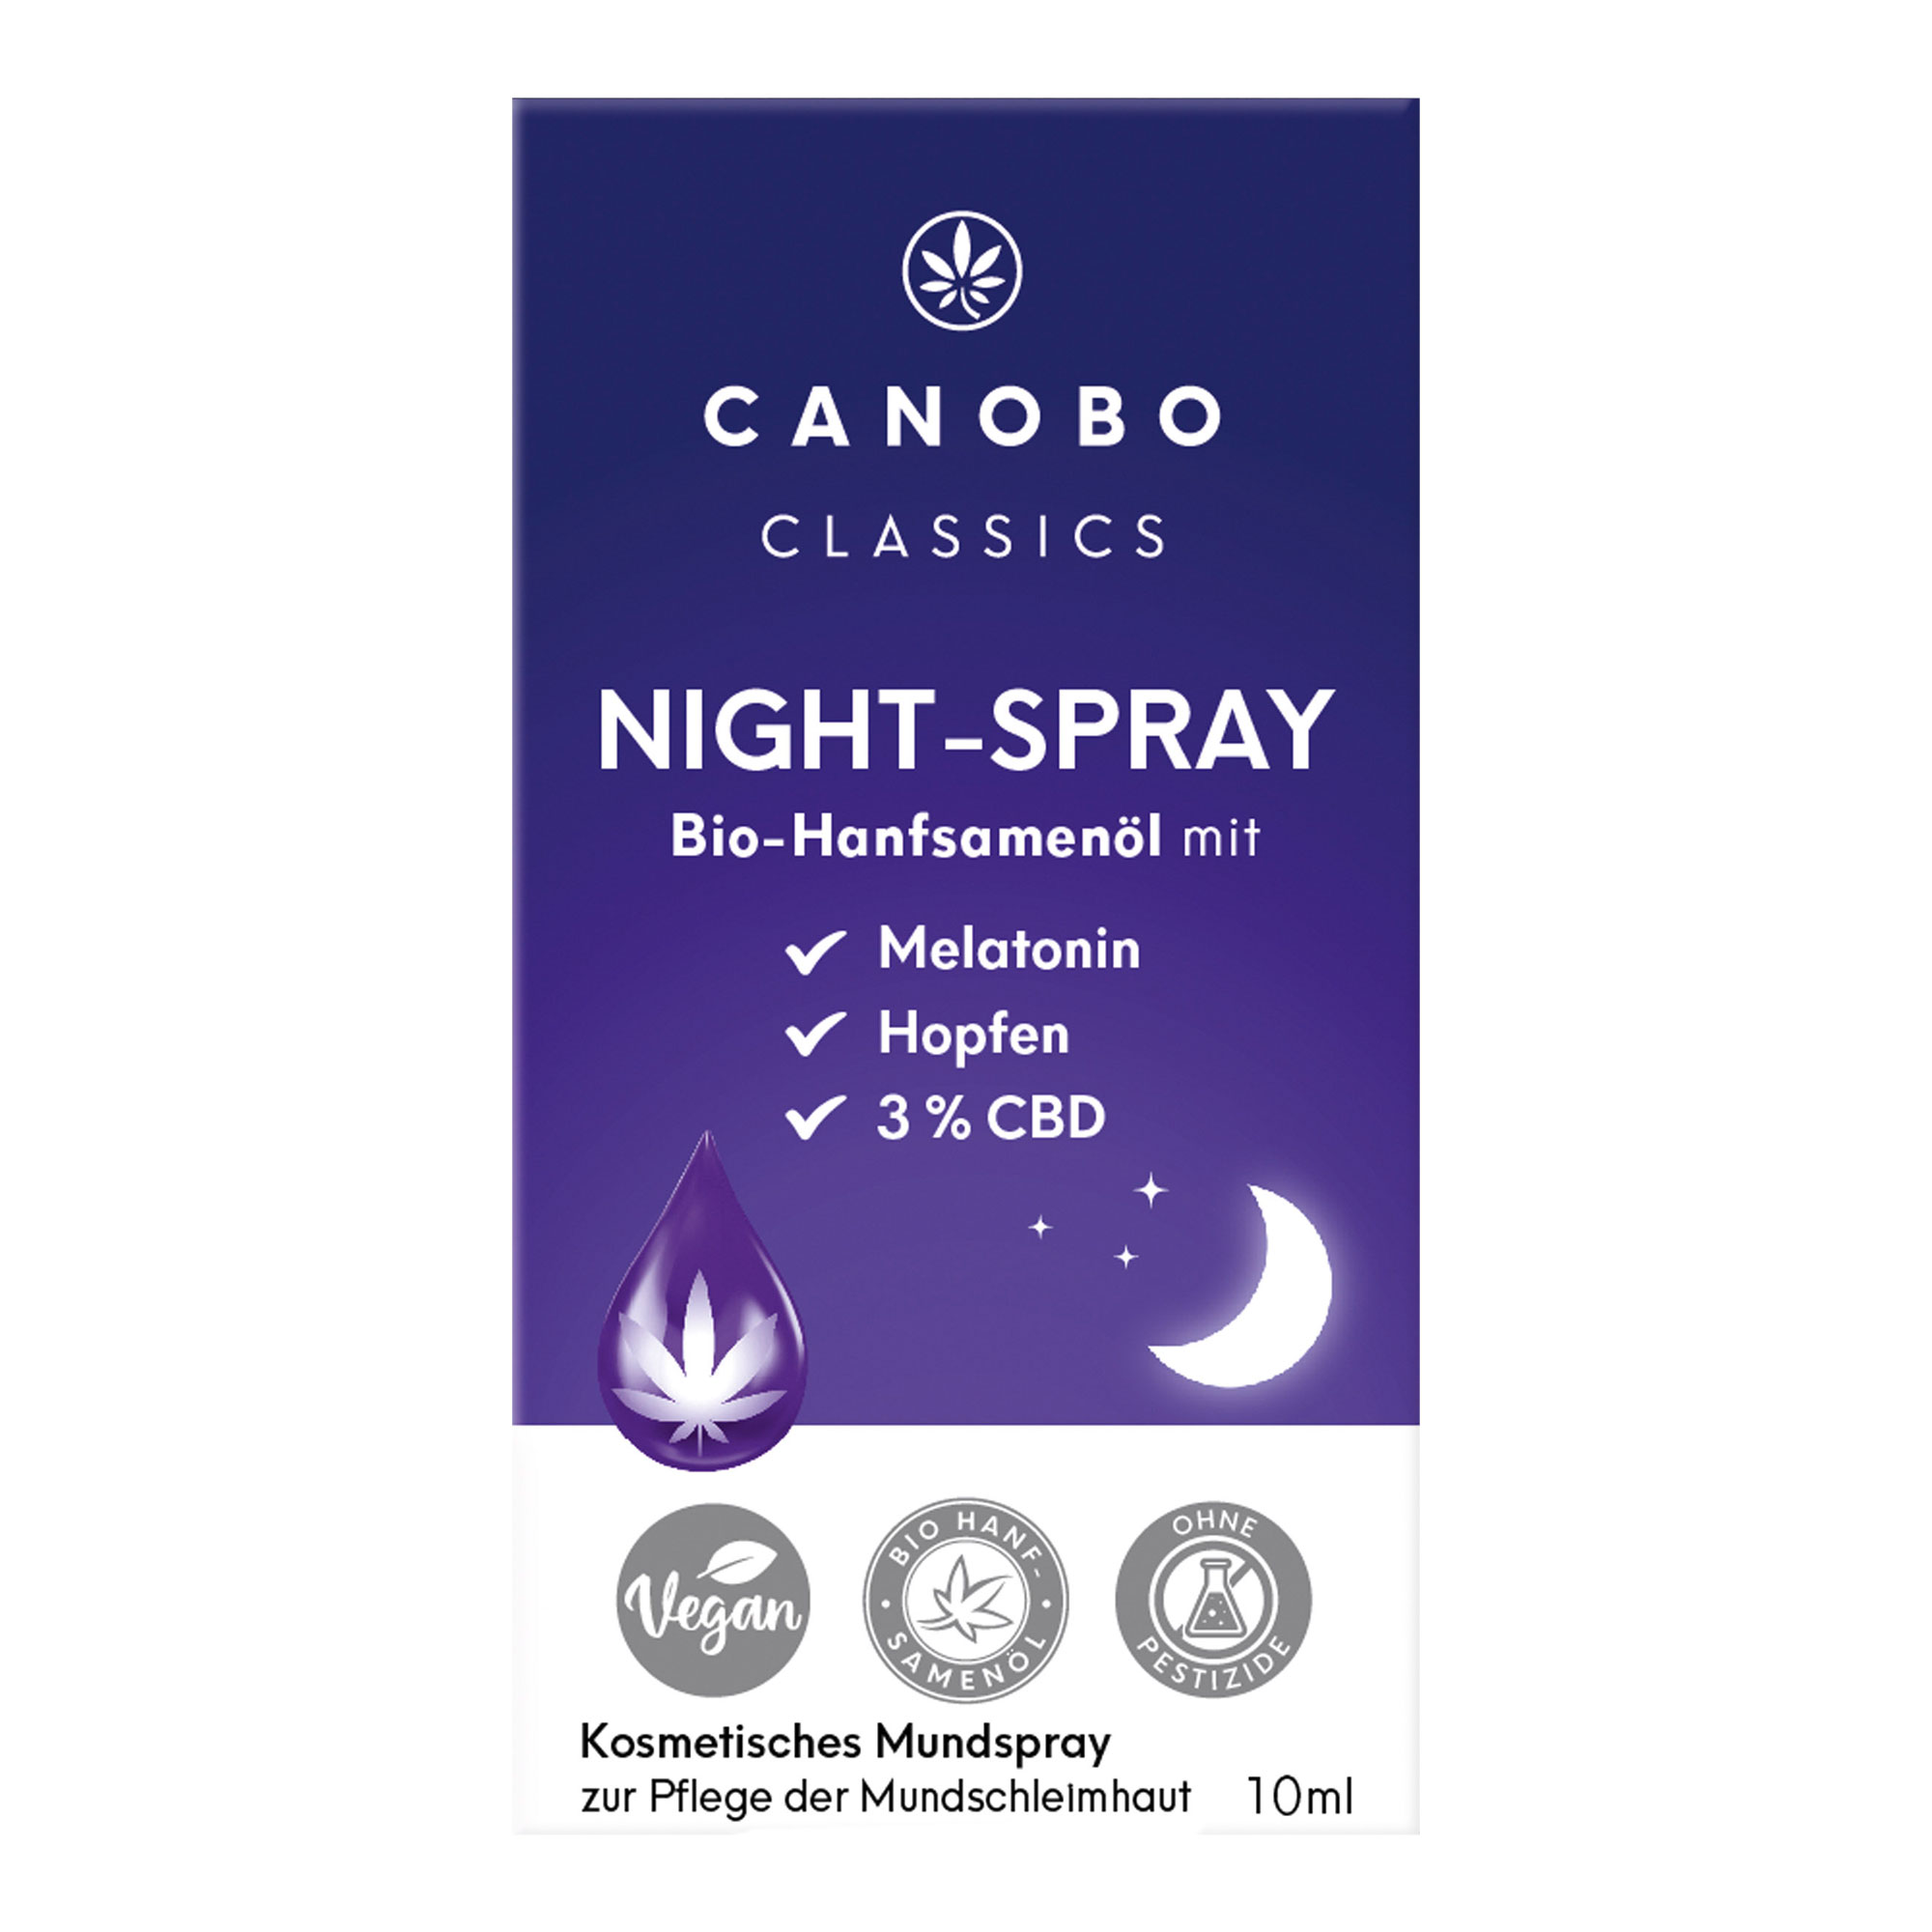 Canobo Night-Spray Bio-Hanfsamenöl mit 3% CBD